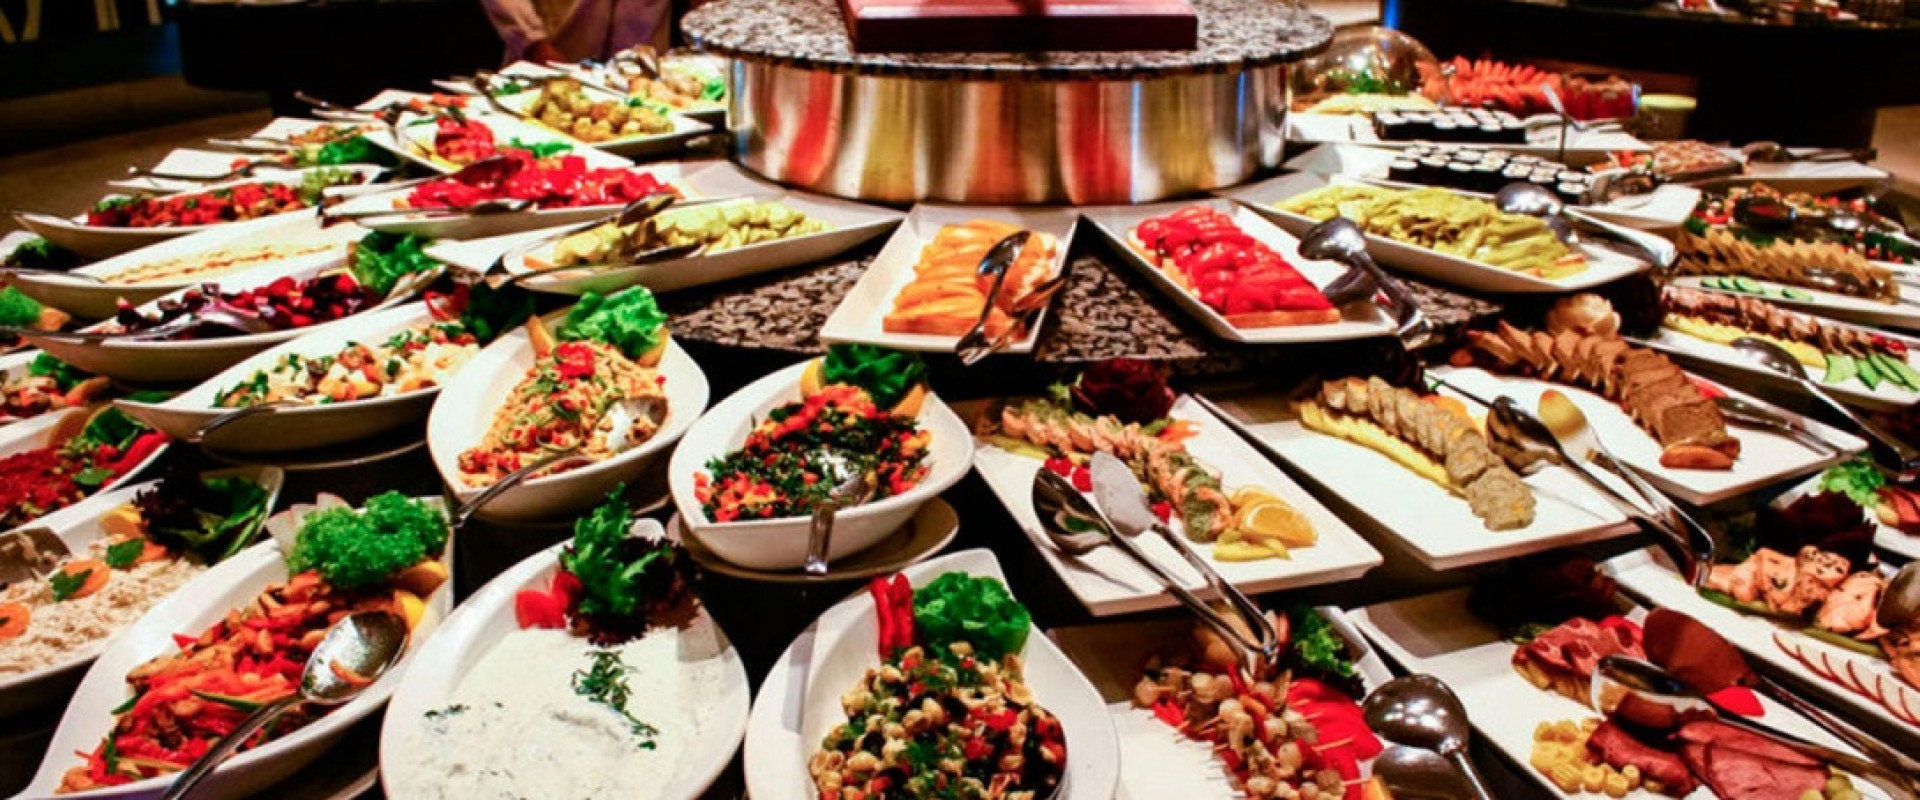 Идеи меню «шведский стол» на День Благодарения: рецепты ужина для толпы